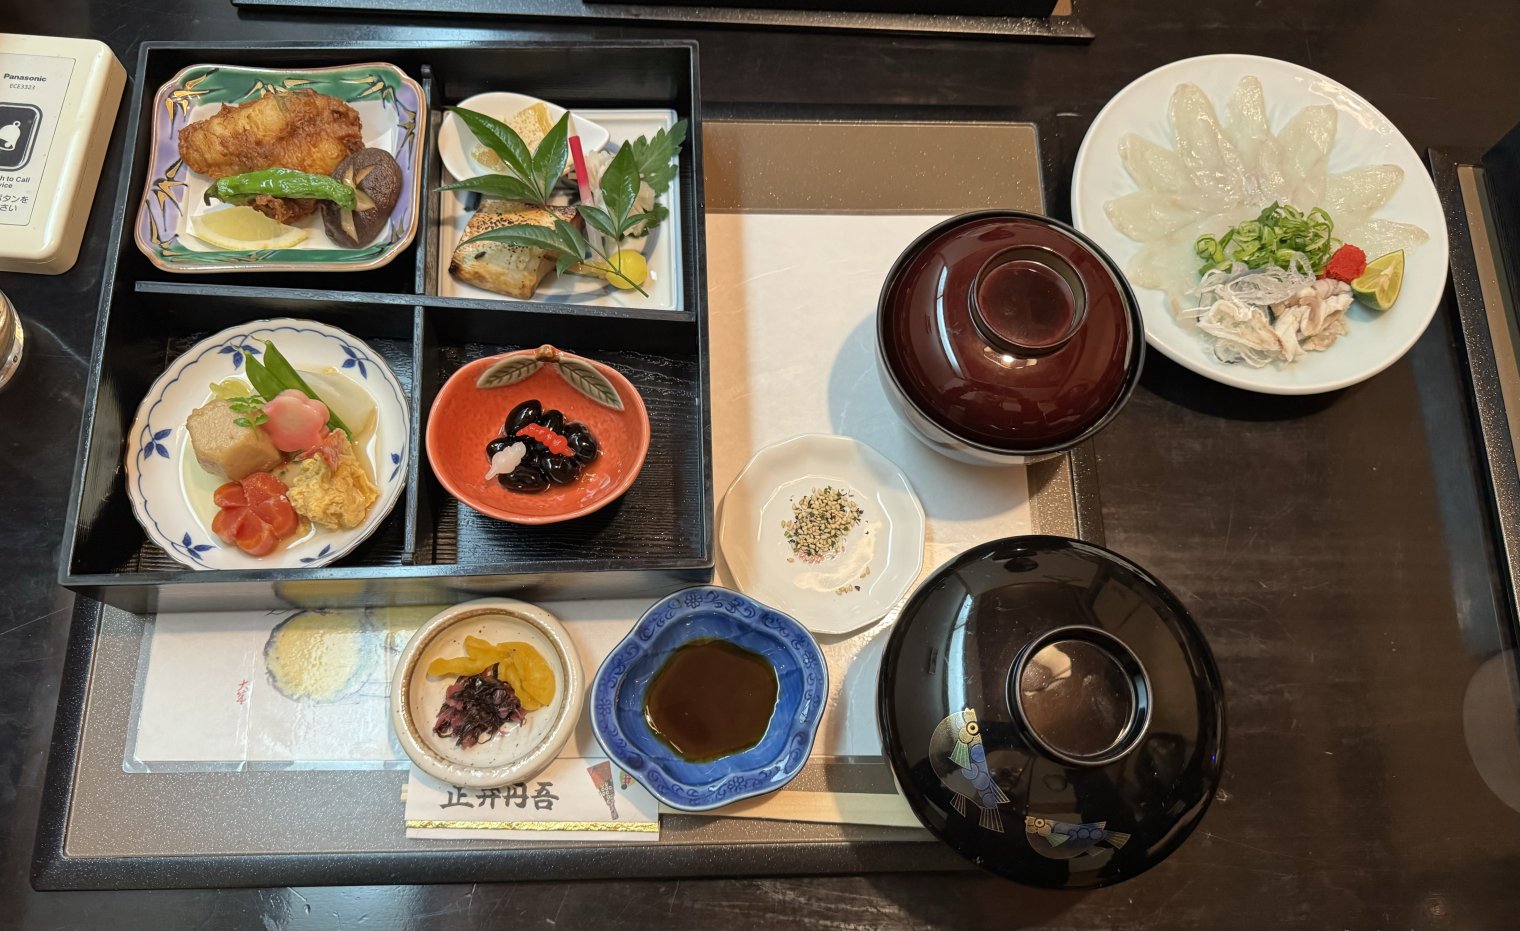 A massive fugu set meal at a restaurant in Hiroshima